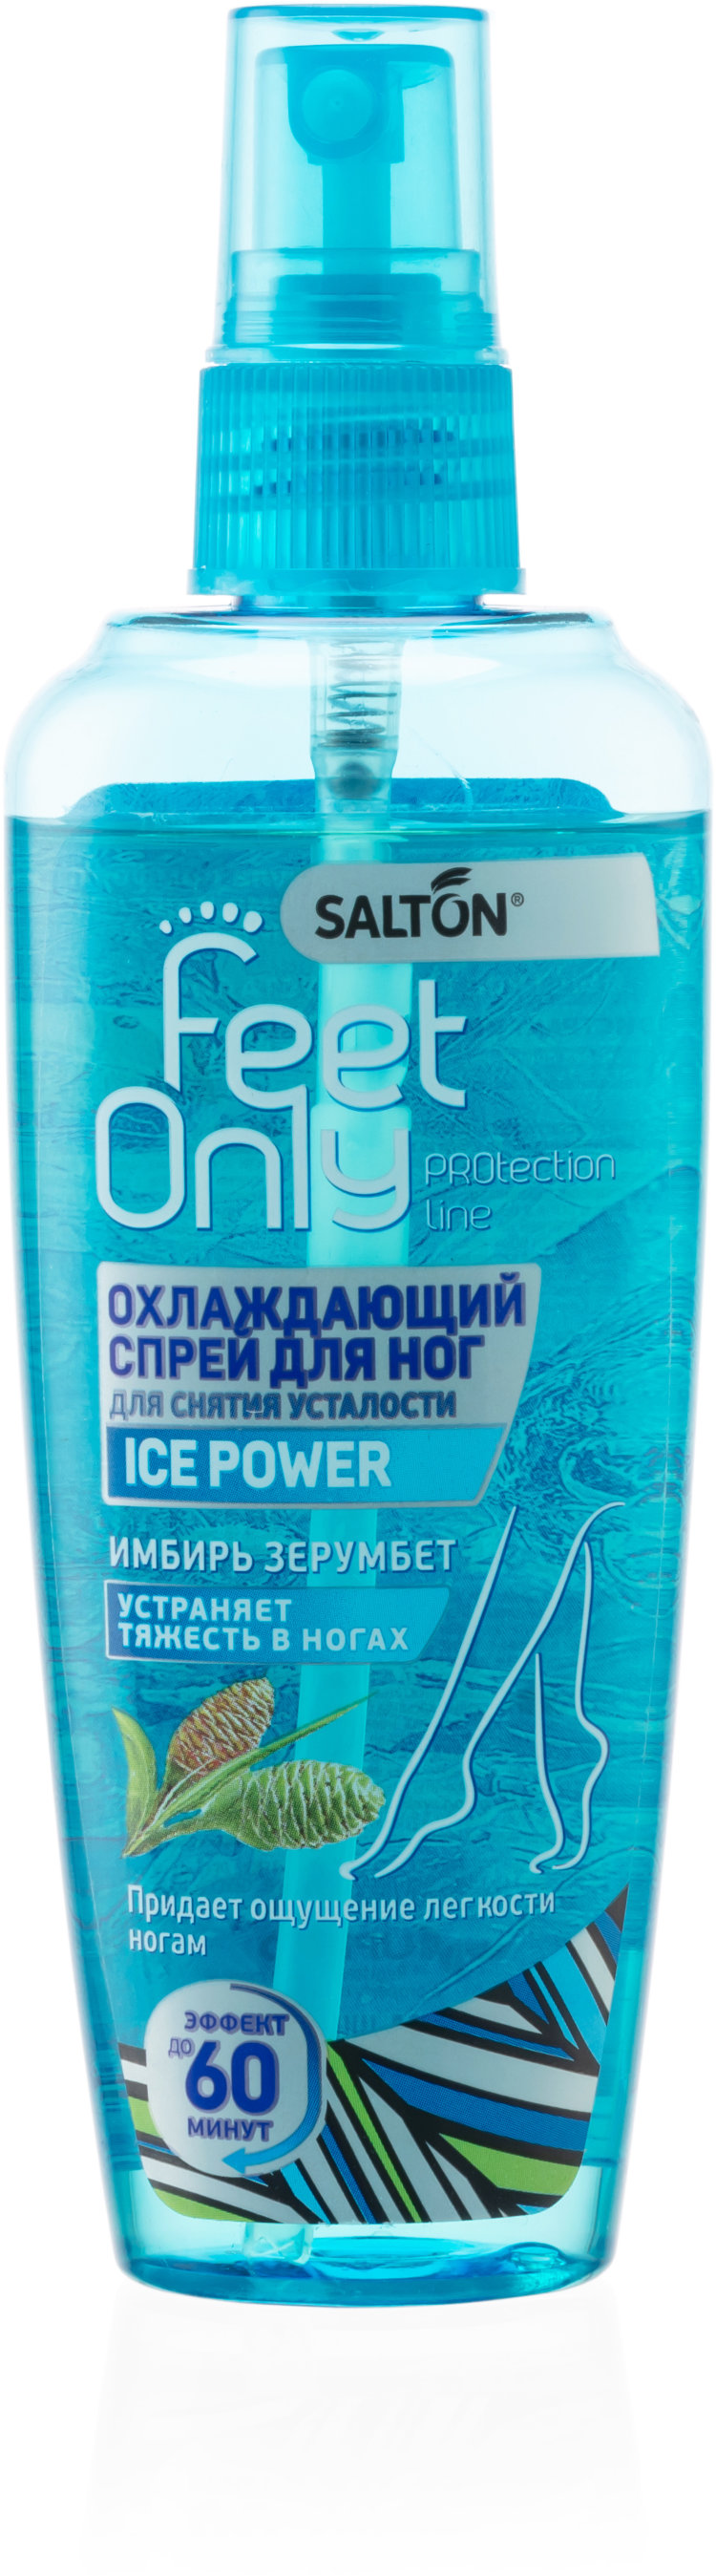 Salton feet. Охлаждающий спрей для ног. Спрей для снятия усталости ног. Спрей для ног охлаждающий от усталости. Salton feet only.